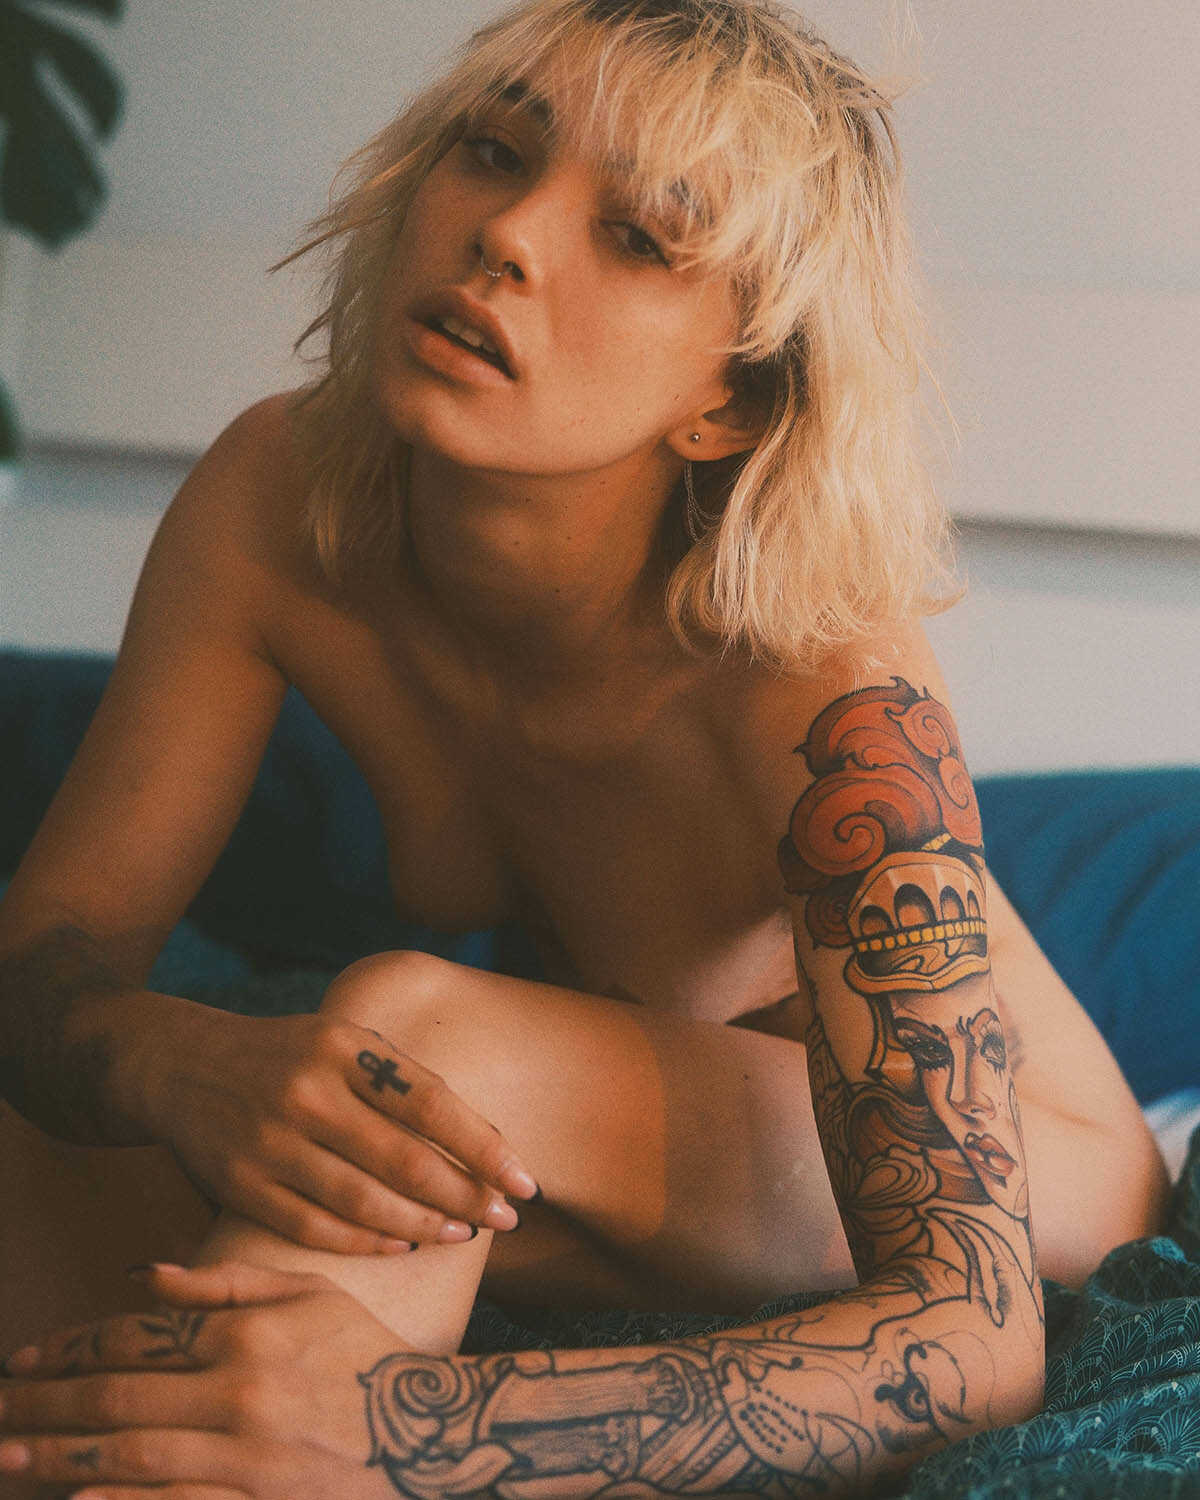 Γυμνή φωτογράφηση του γεμάτου τατουάζ σώματος της Witchy Pixie